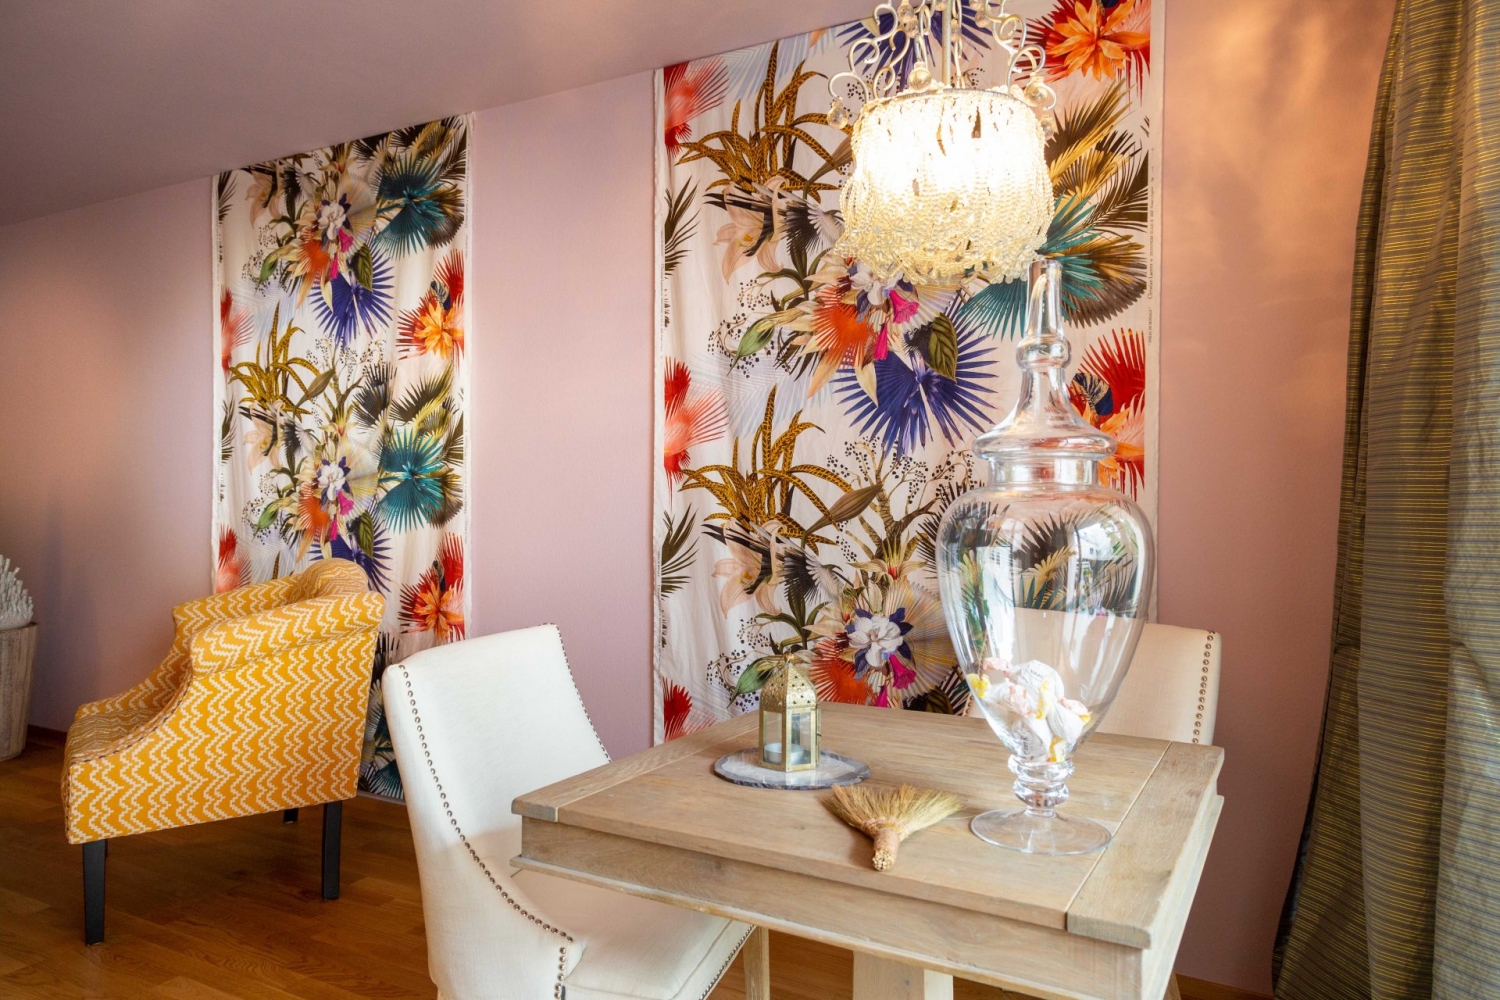 Kleiner Holztisch vor Lacroix-Wandbehang von Designers Guild mit verschiedenen blühenden Blumen und Pflanzen.